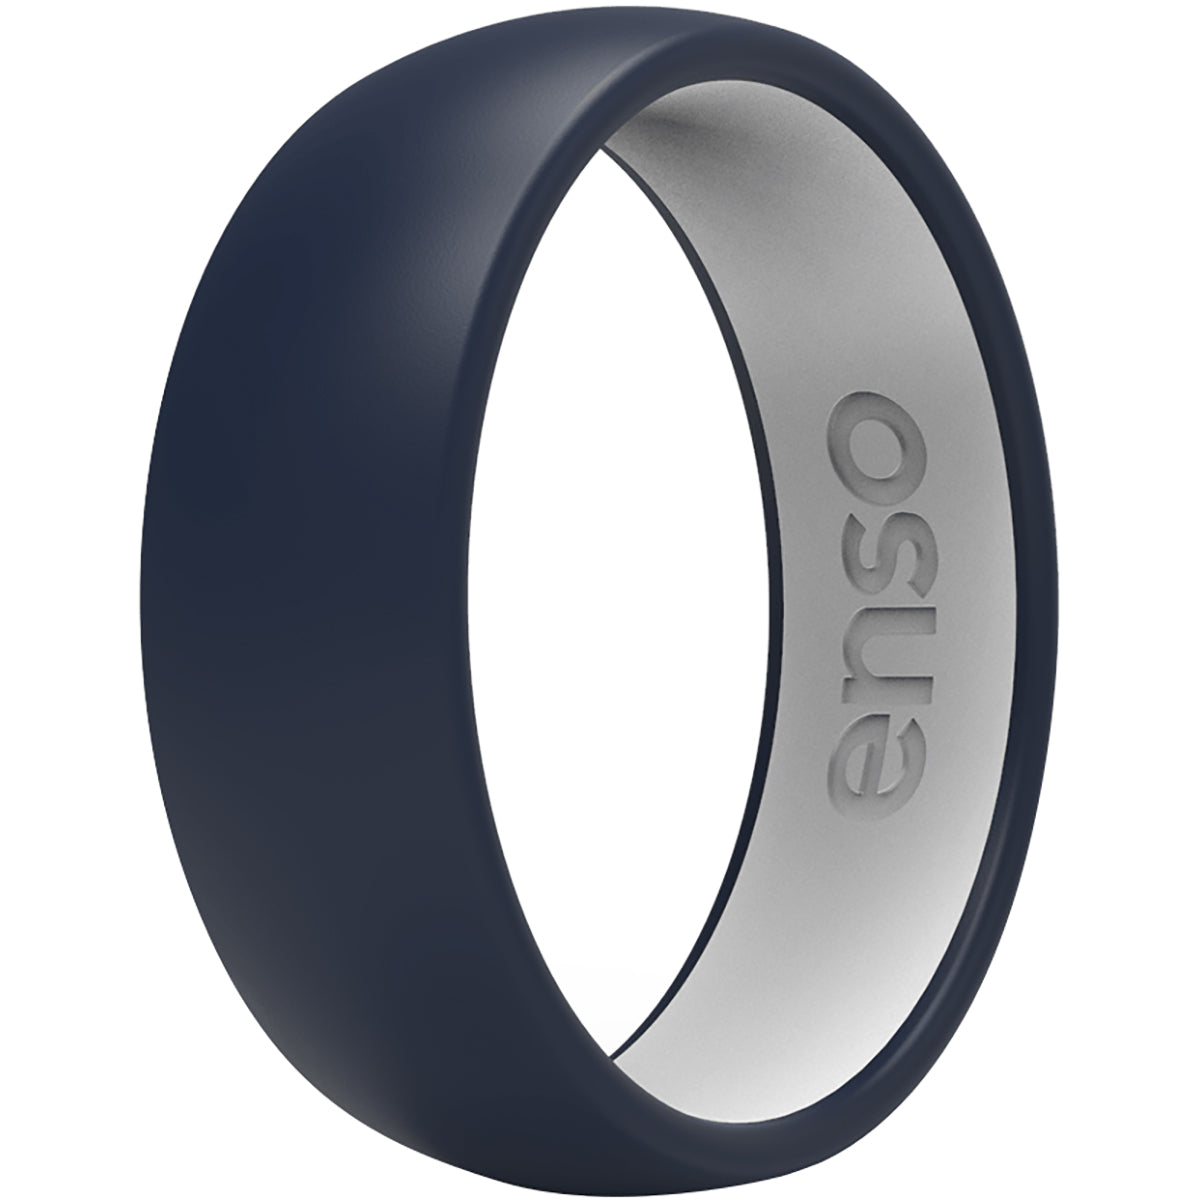 Enso Rings Dualtone Series Silicone Ring - Navy Blue/White Enso Rings